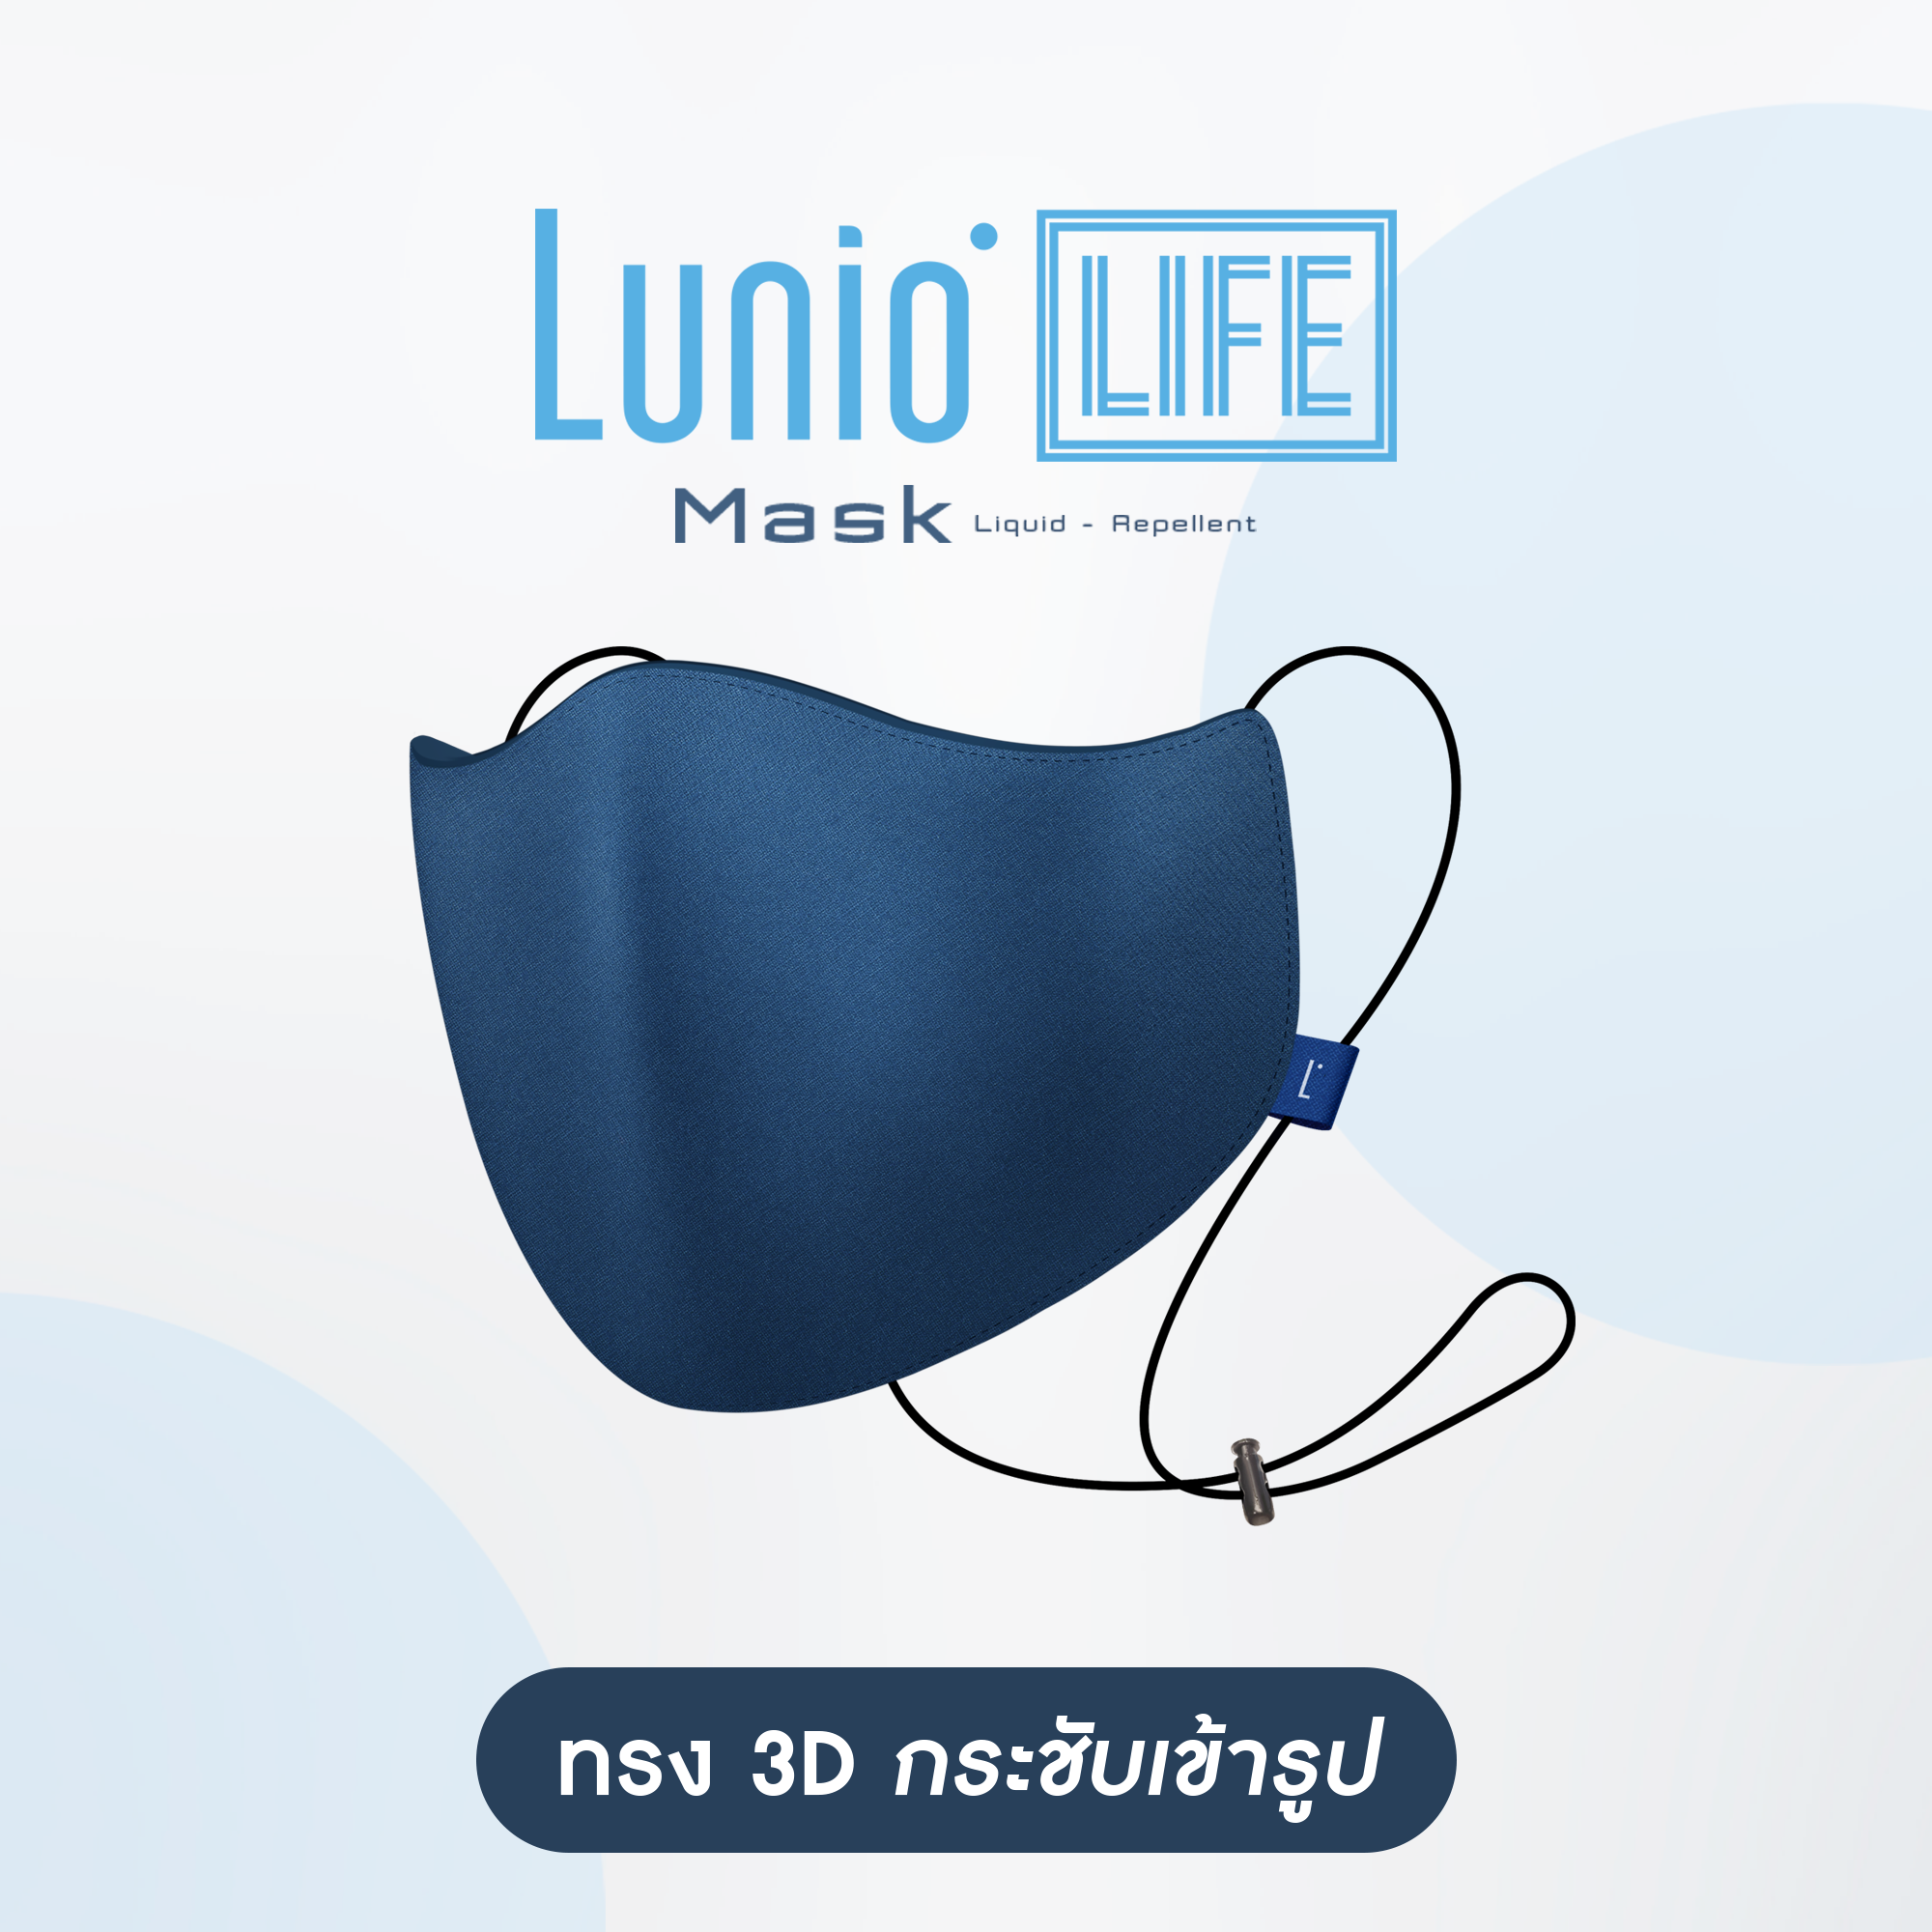 [ลดแรง7วันเท่านั้น]Lunio Life Mask Liquid Repellent หน้ากากผ้า ผ้าปิดจมูก กันน้ำ มีสายคล้องคอปรับระดับได้ มีช่องใส่แผ่นฟิลเตอร์ สีกรม